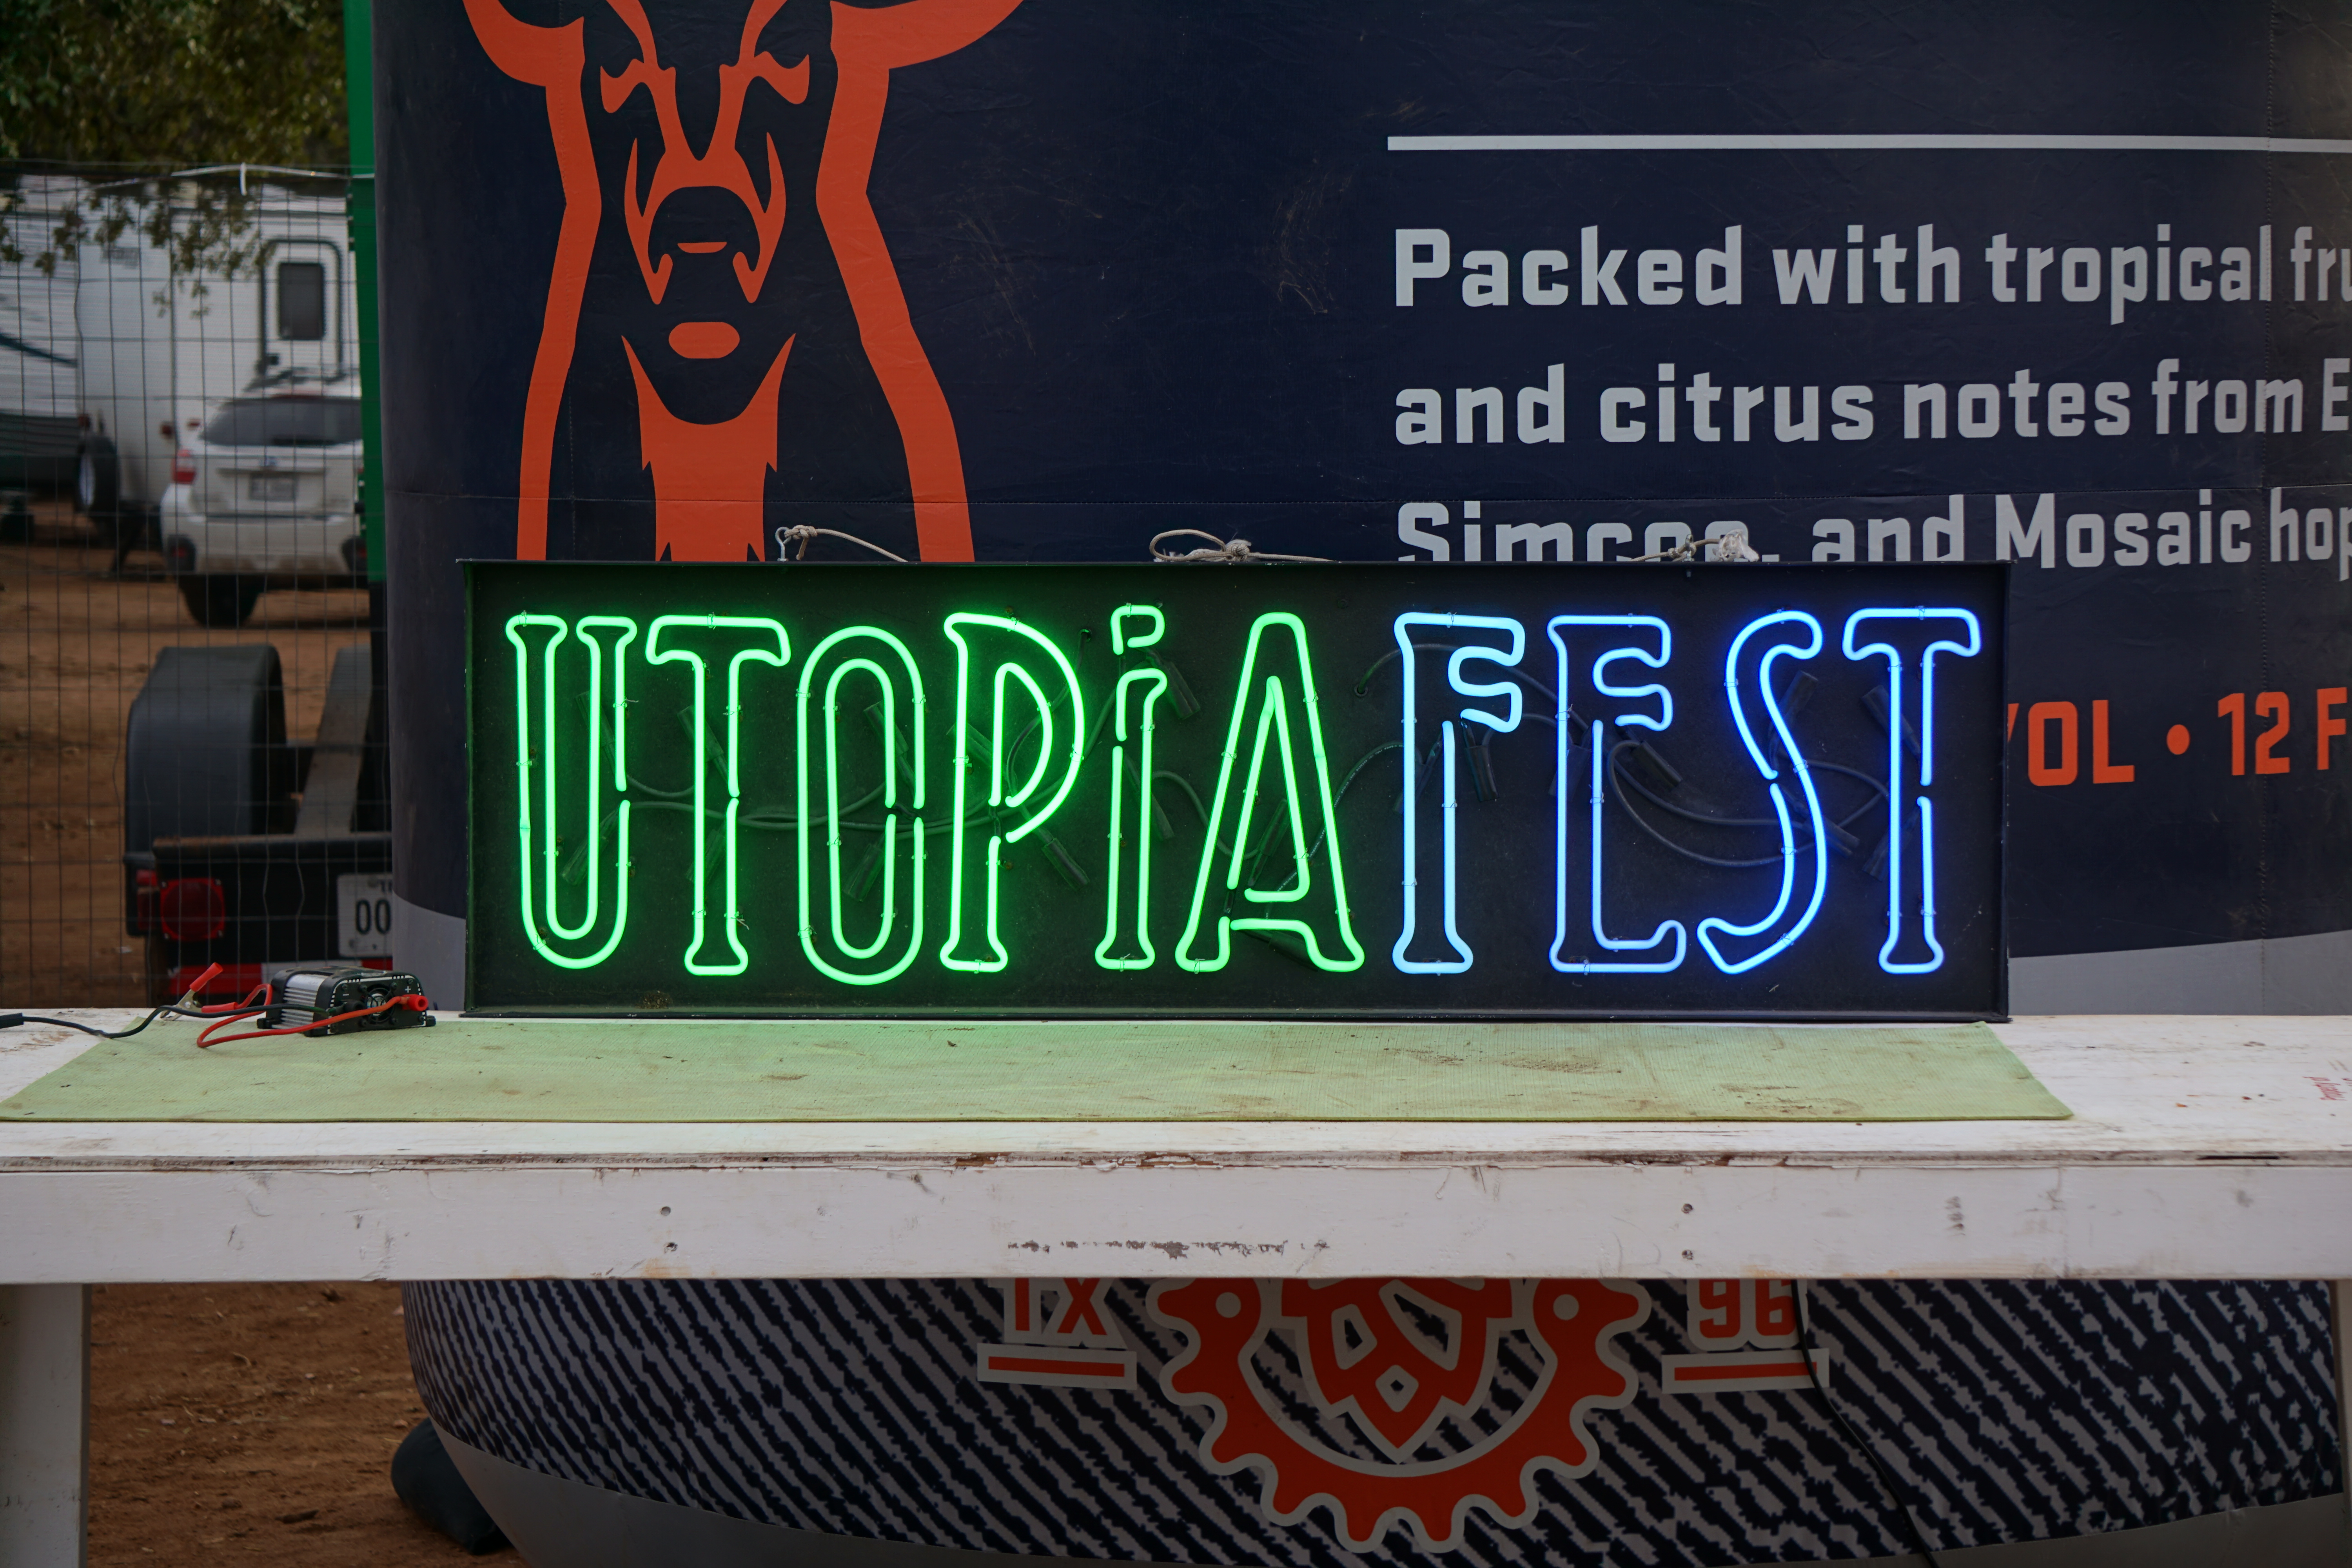 UtopiaFest sign